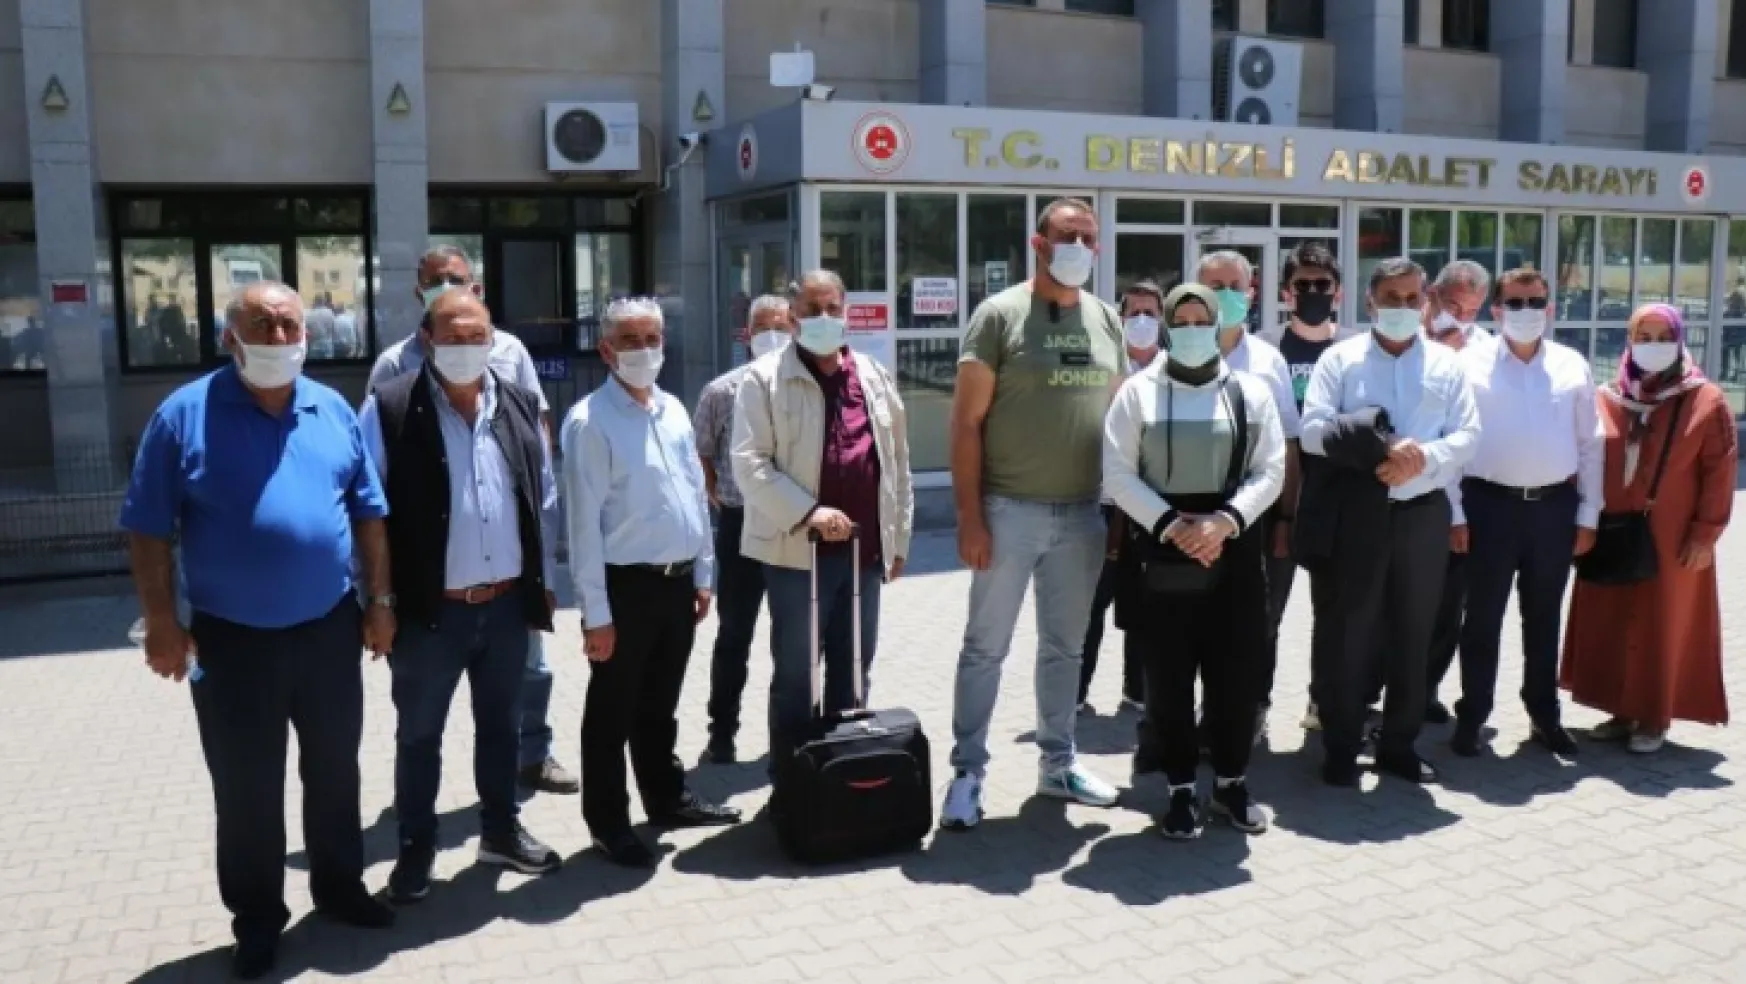 Türkiye'nin kabusu Buldan Şebekesi yargılanmaya devam ediyor